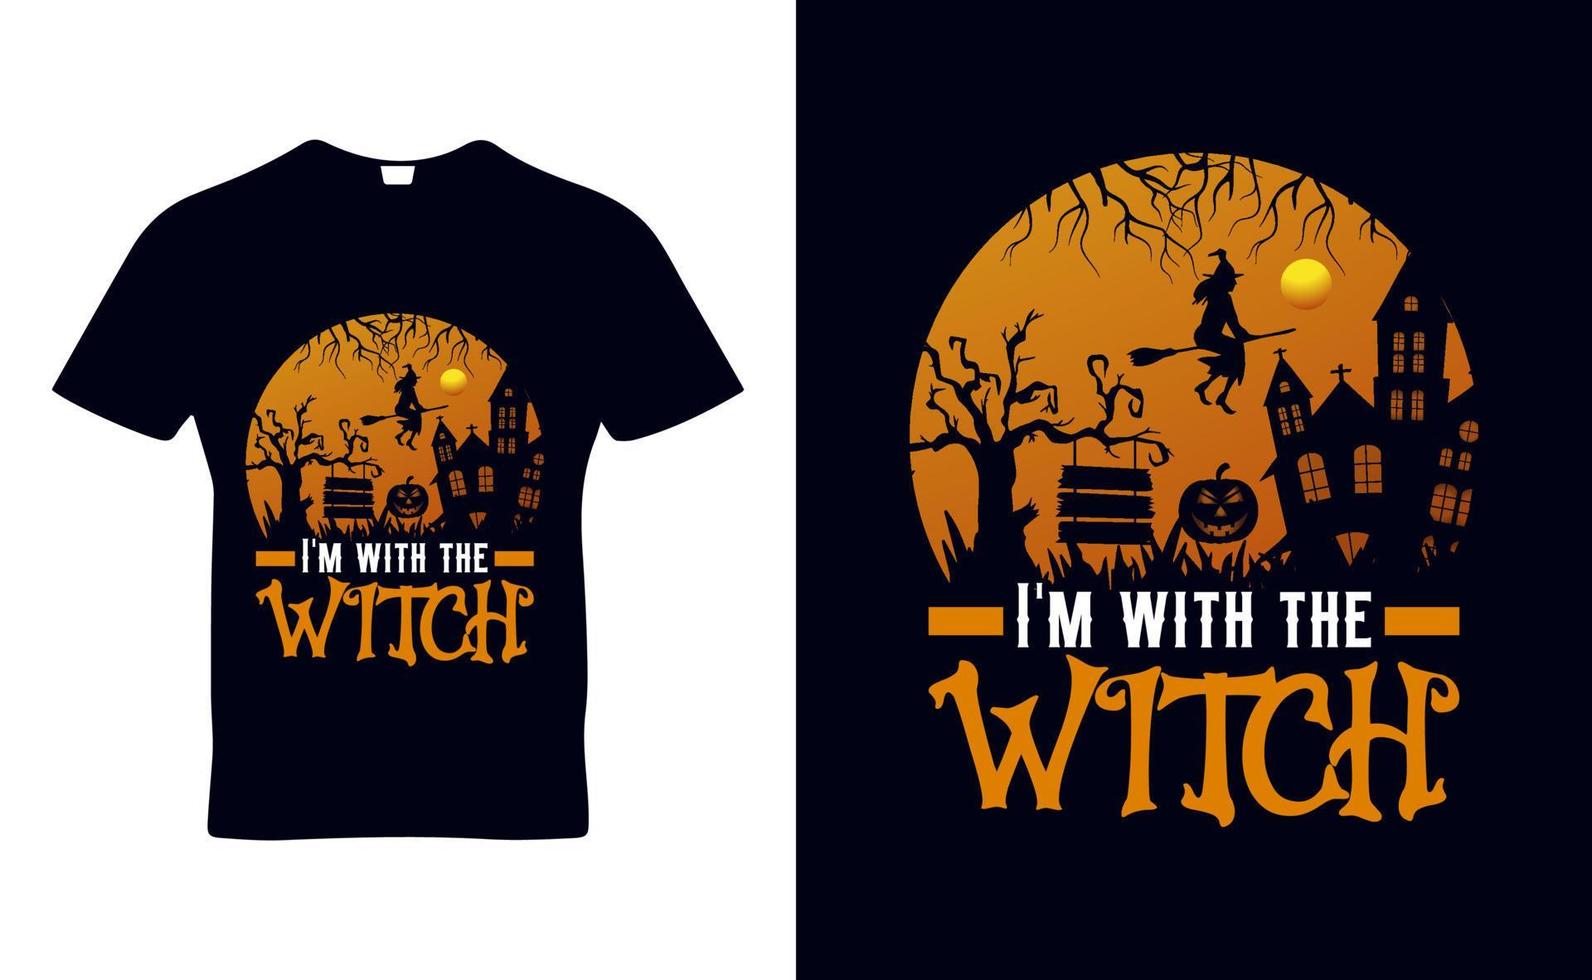 conception de modèle de t-shirt de citations de tri halloween pour le jour d'halloween et les affaires de pod vecteur